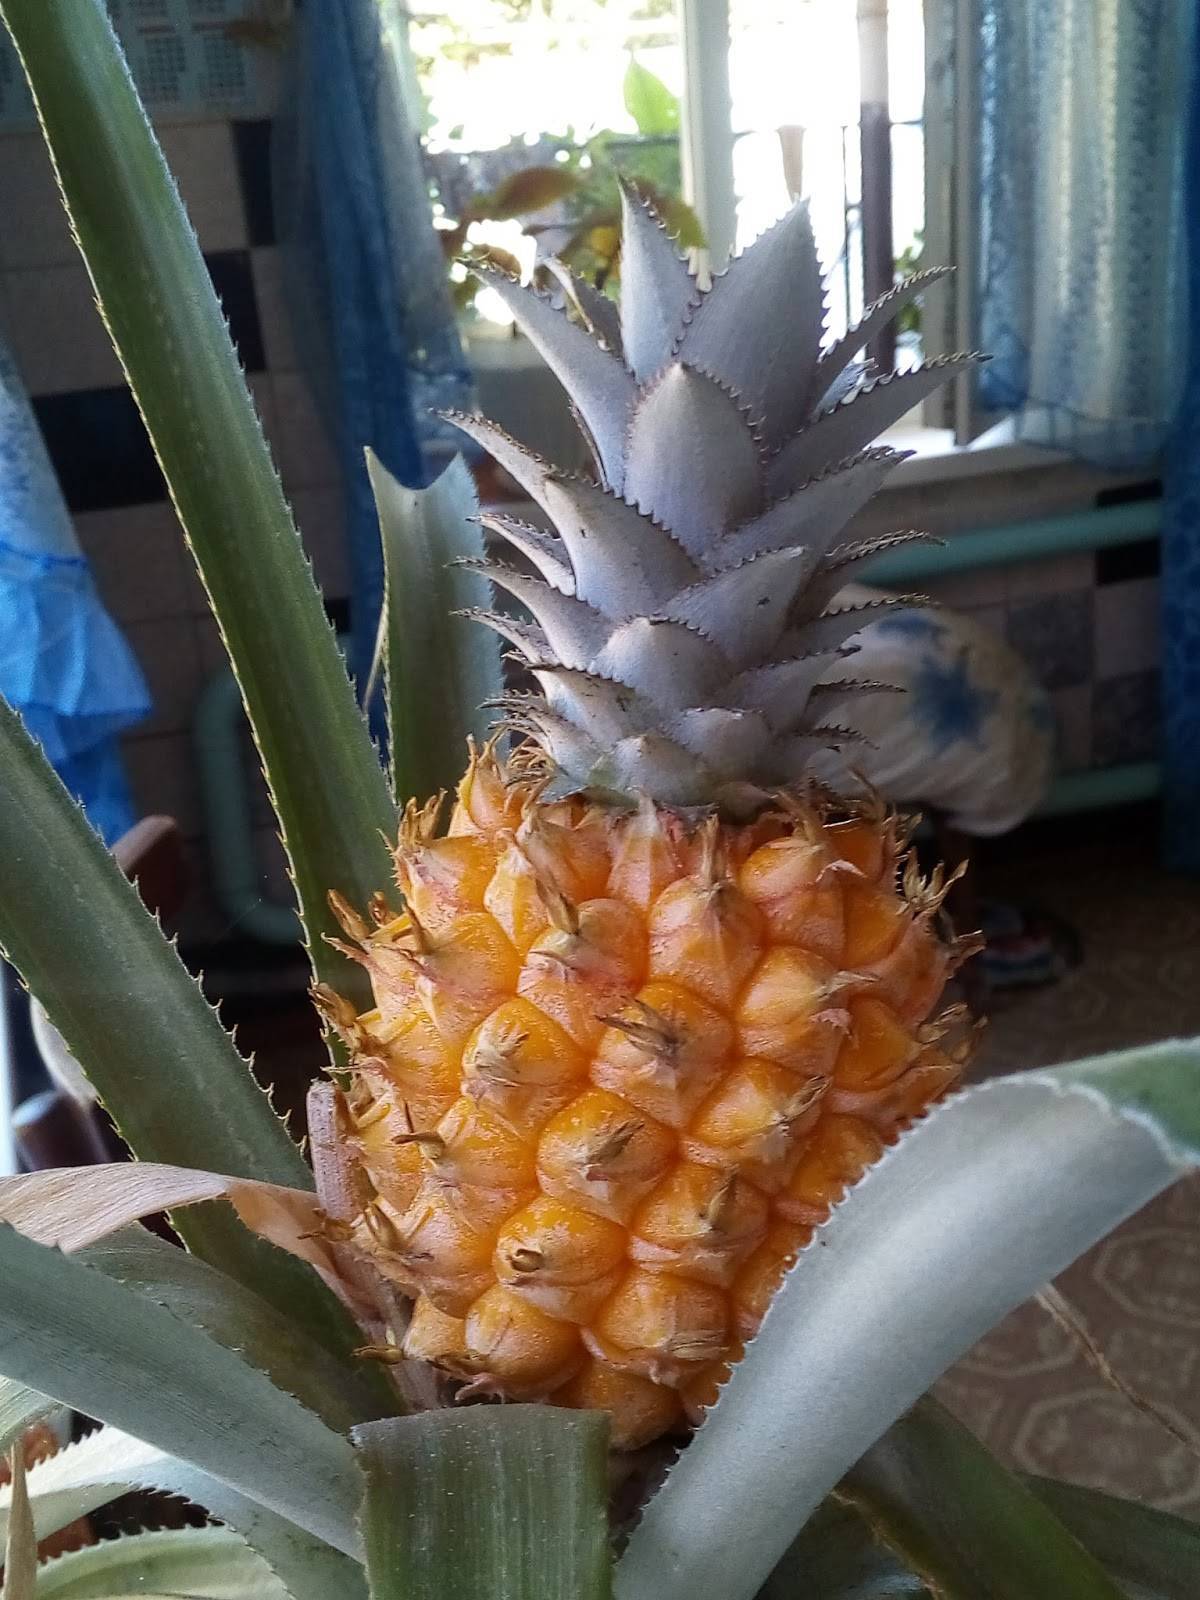 Как вырастить ананас дома из верхушки пошагово, фото как укоренить